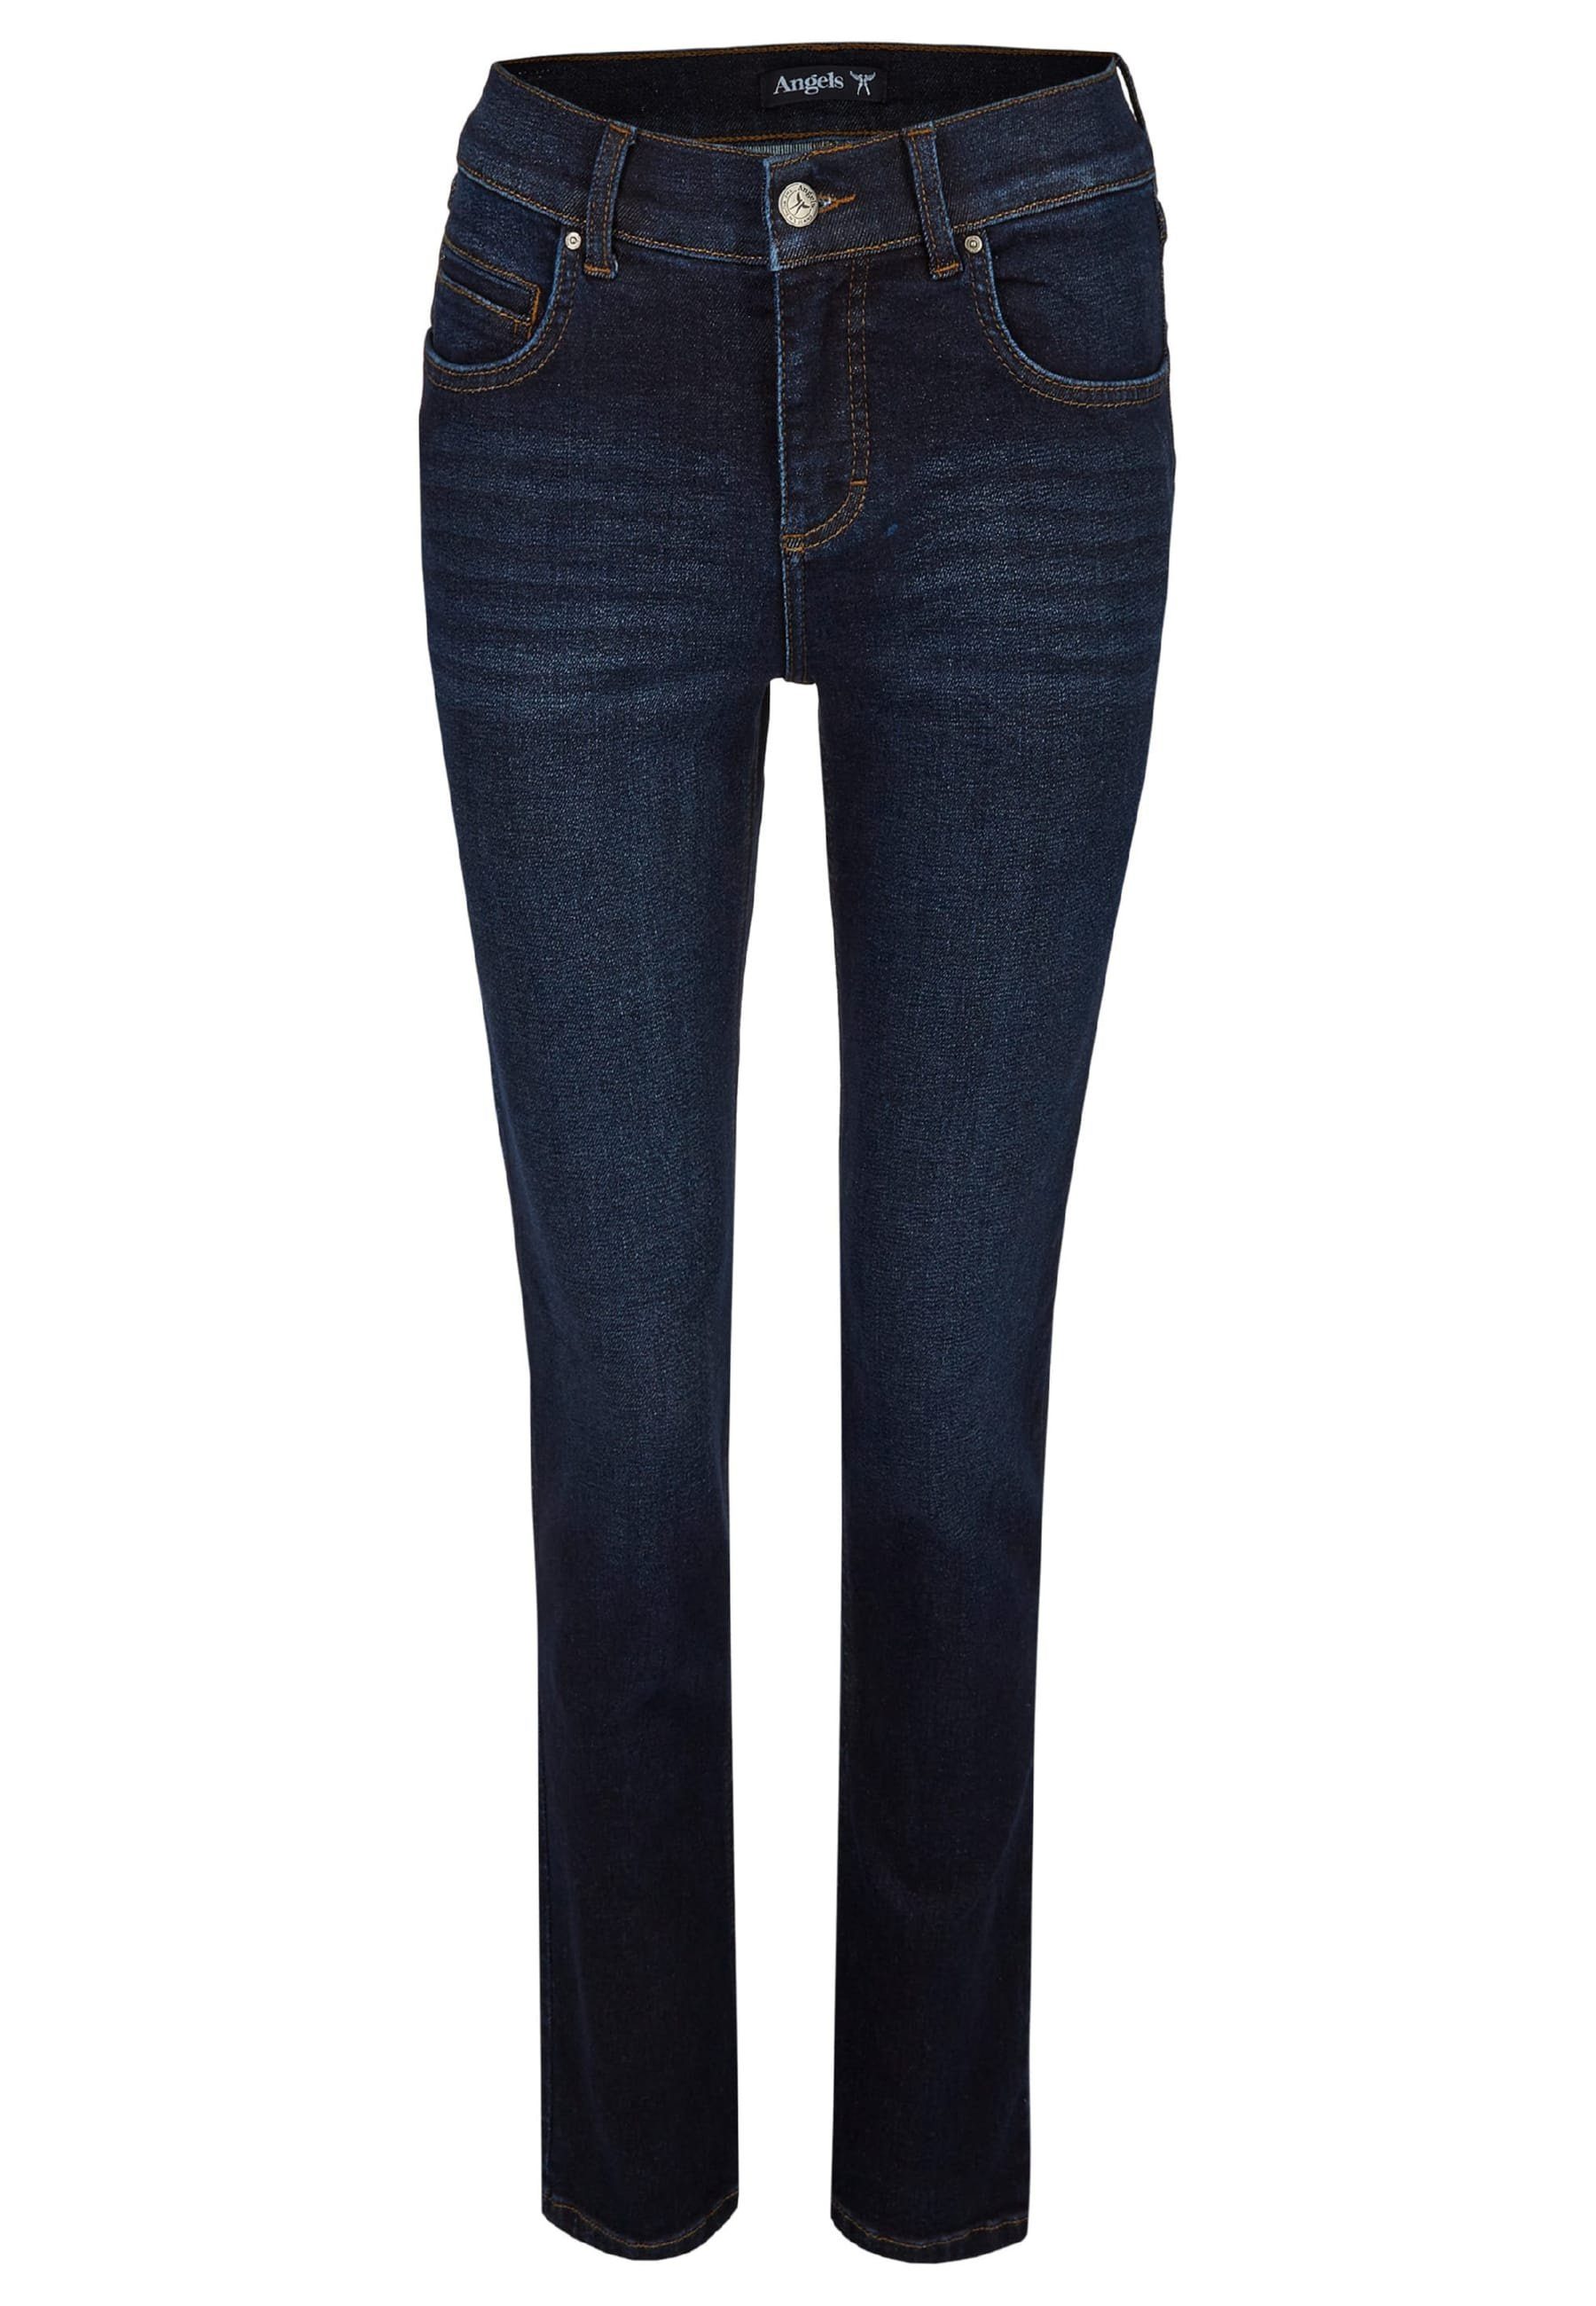 Direkt geführter Laden ANGELS Straight-Jeans Jeans Cici Used-Waschung indigo mit mit Label-Applikationen